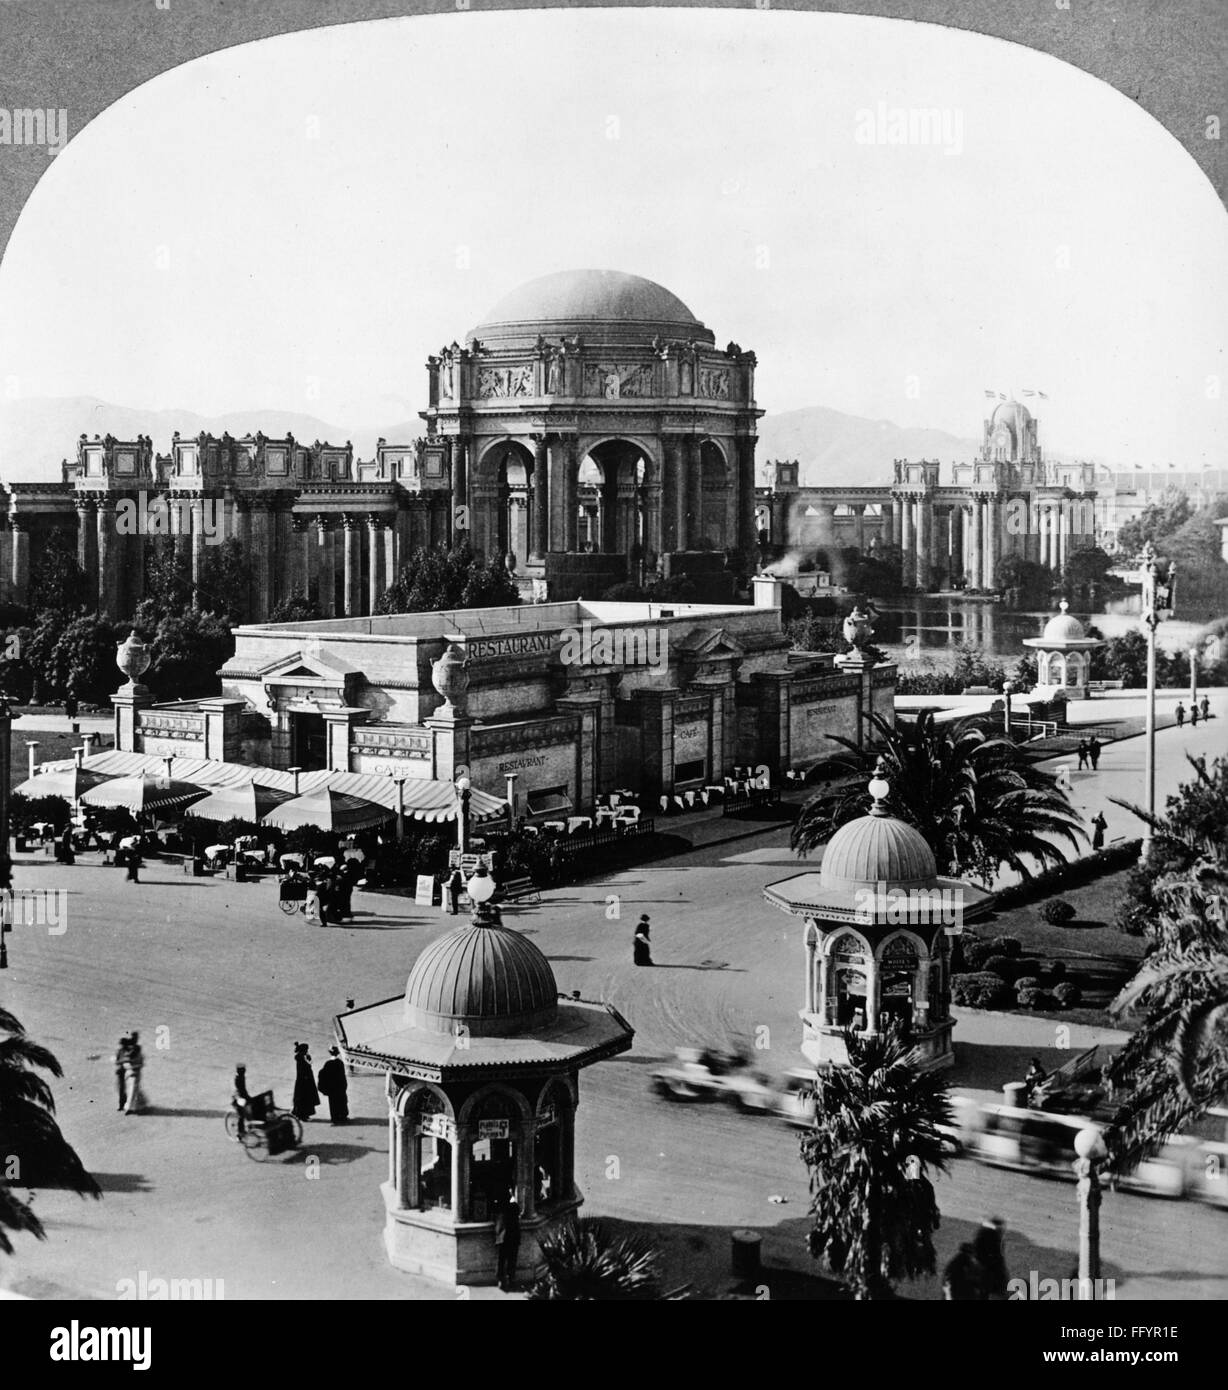 PANAMA-PACIFIC EXPOSITION. /Nil Palazzo delle Belle Arti a Panama-Pacific Exposition di San Francisco, California. Stereografia, 1915. Foto Stock